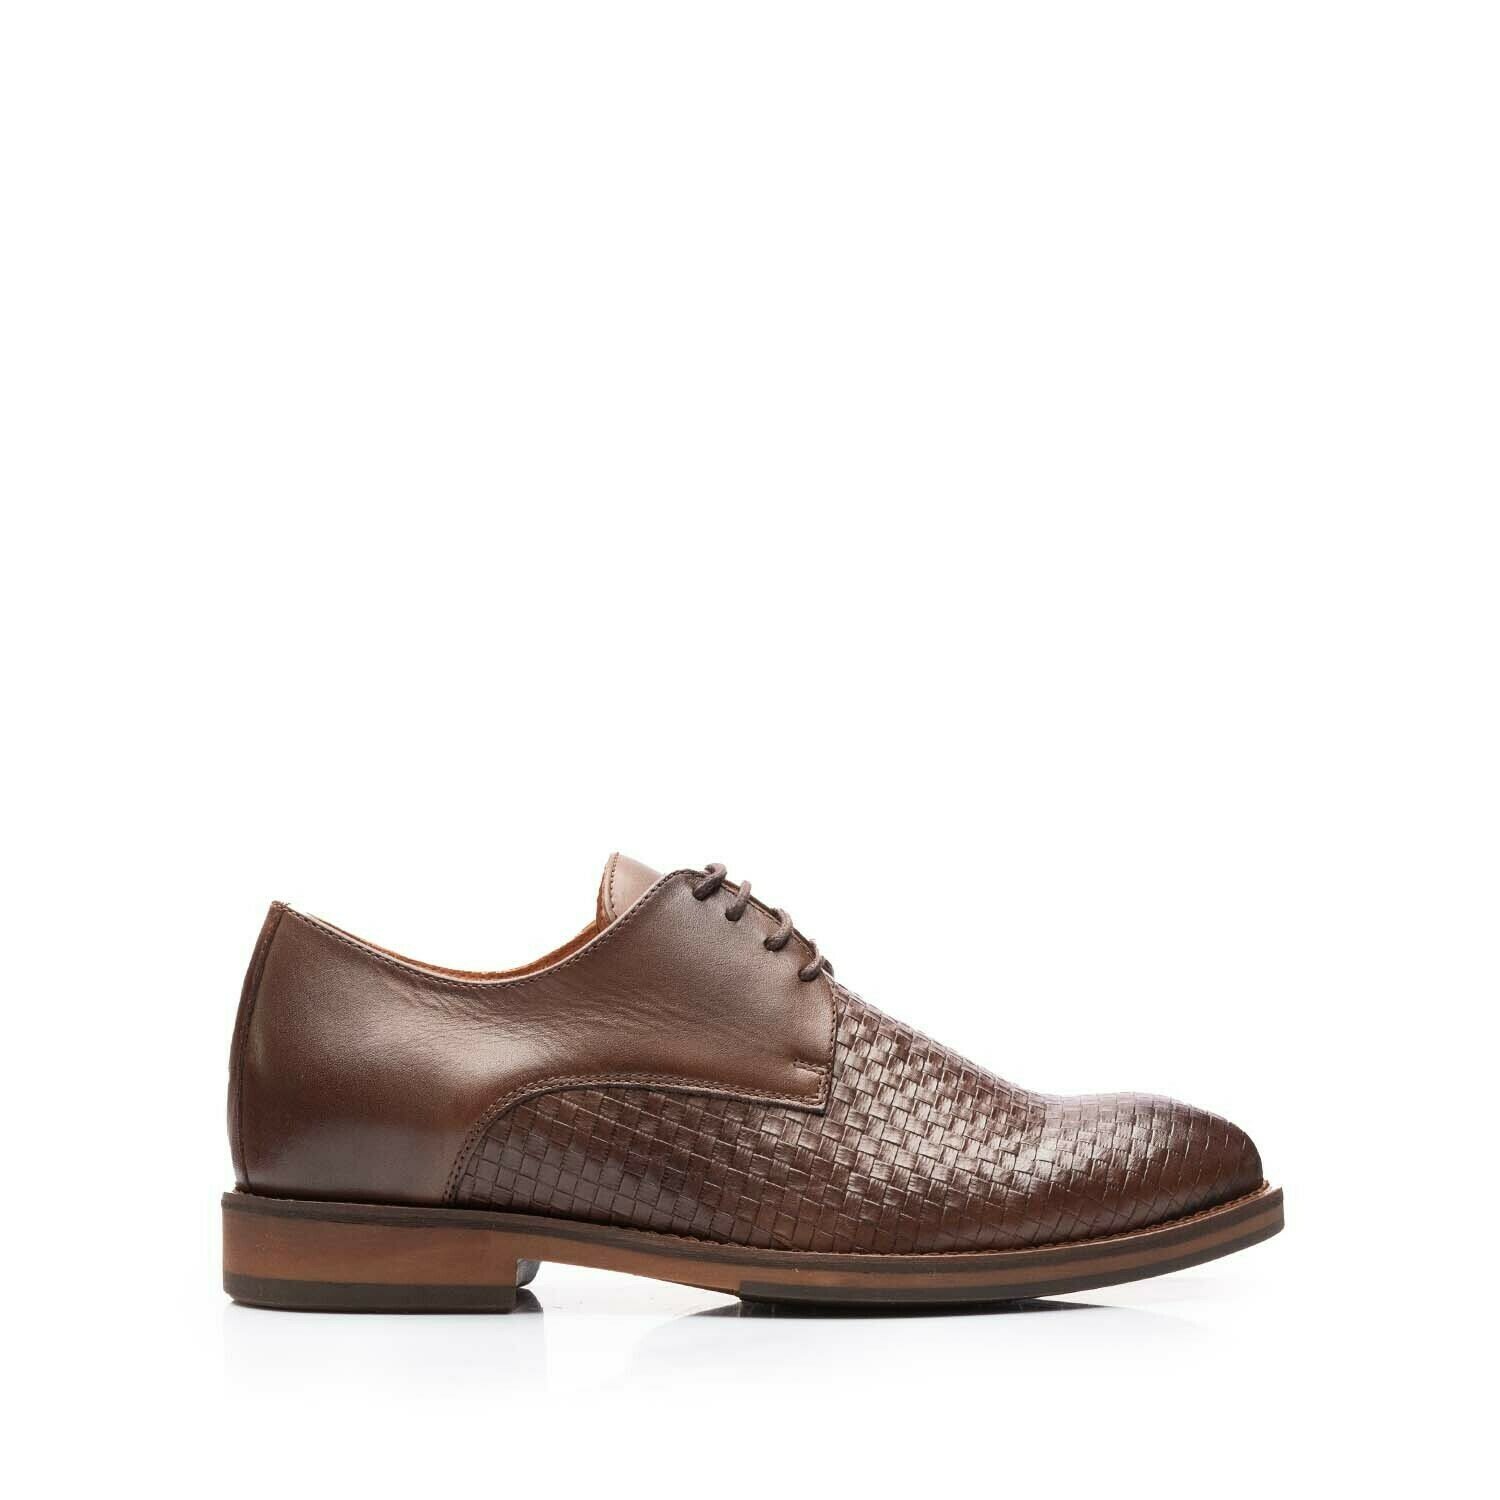 Pantofi eleganți bărbați din piele naturală, Leofex - 630 Maro Box